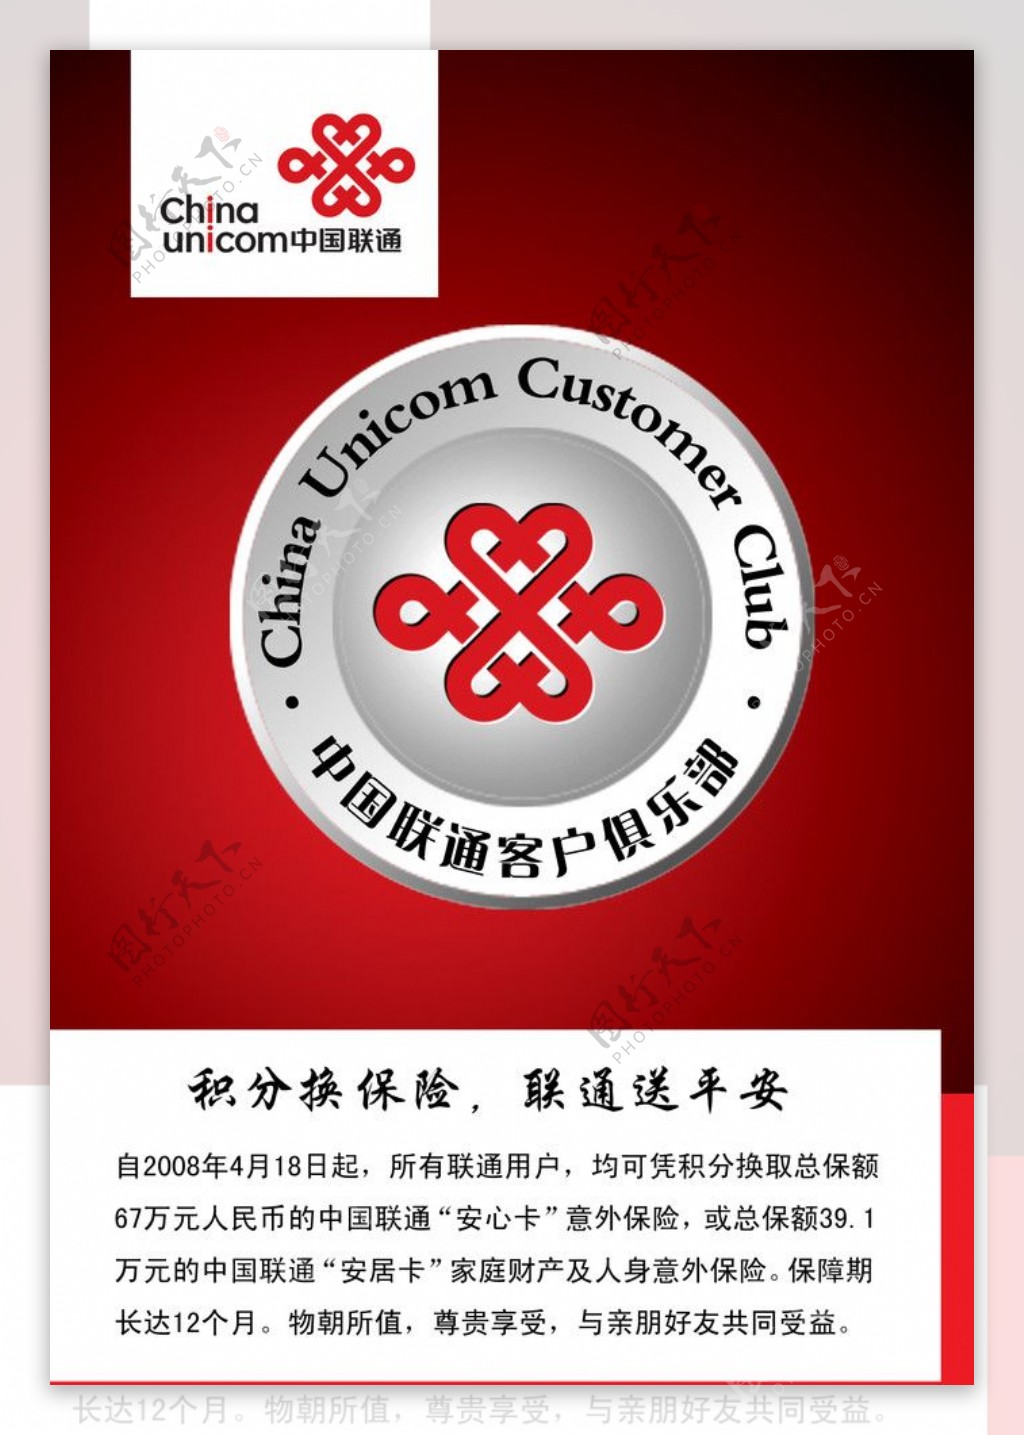 中国联通客户俱乐部积分换保险图片